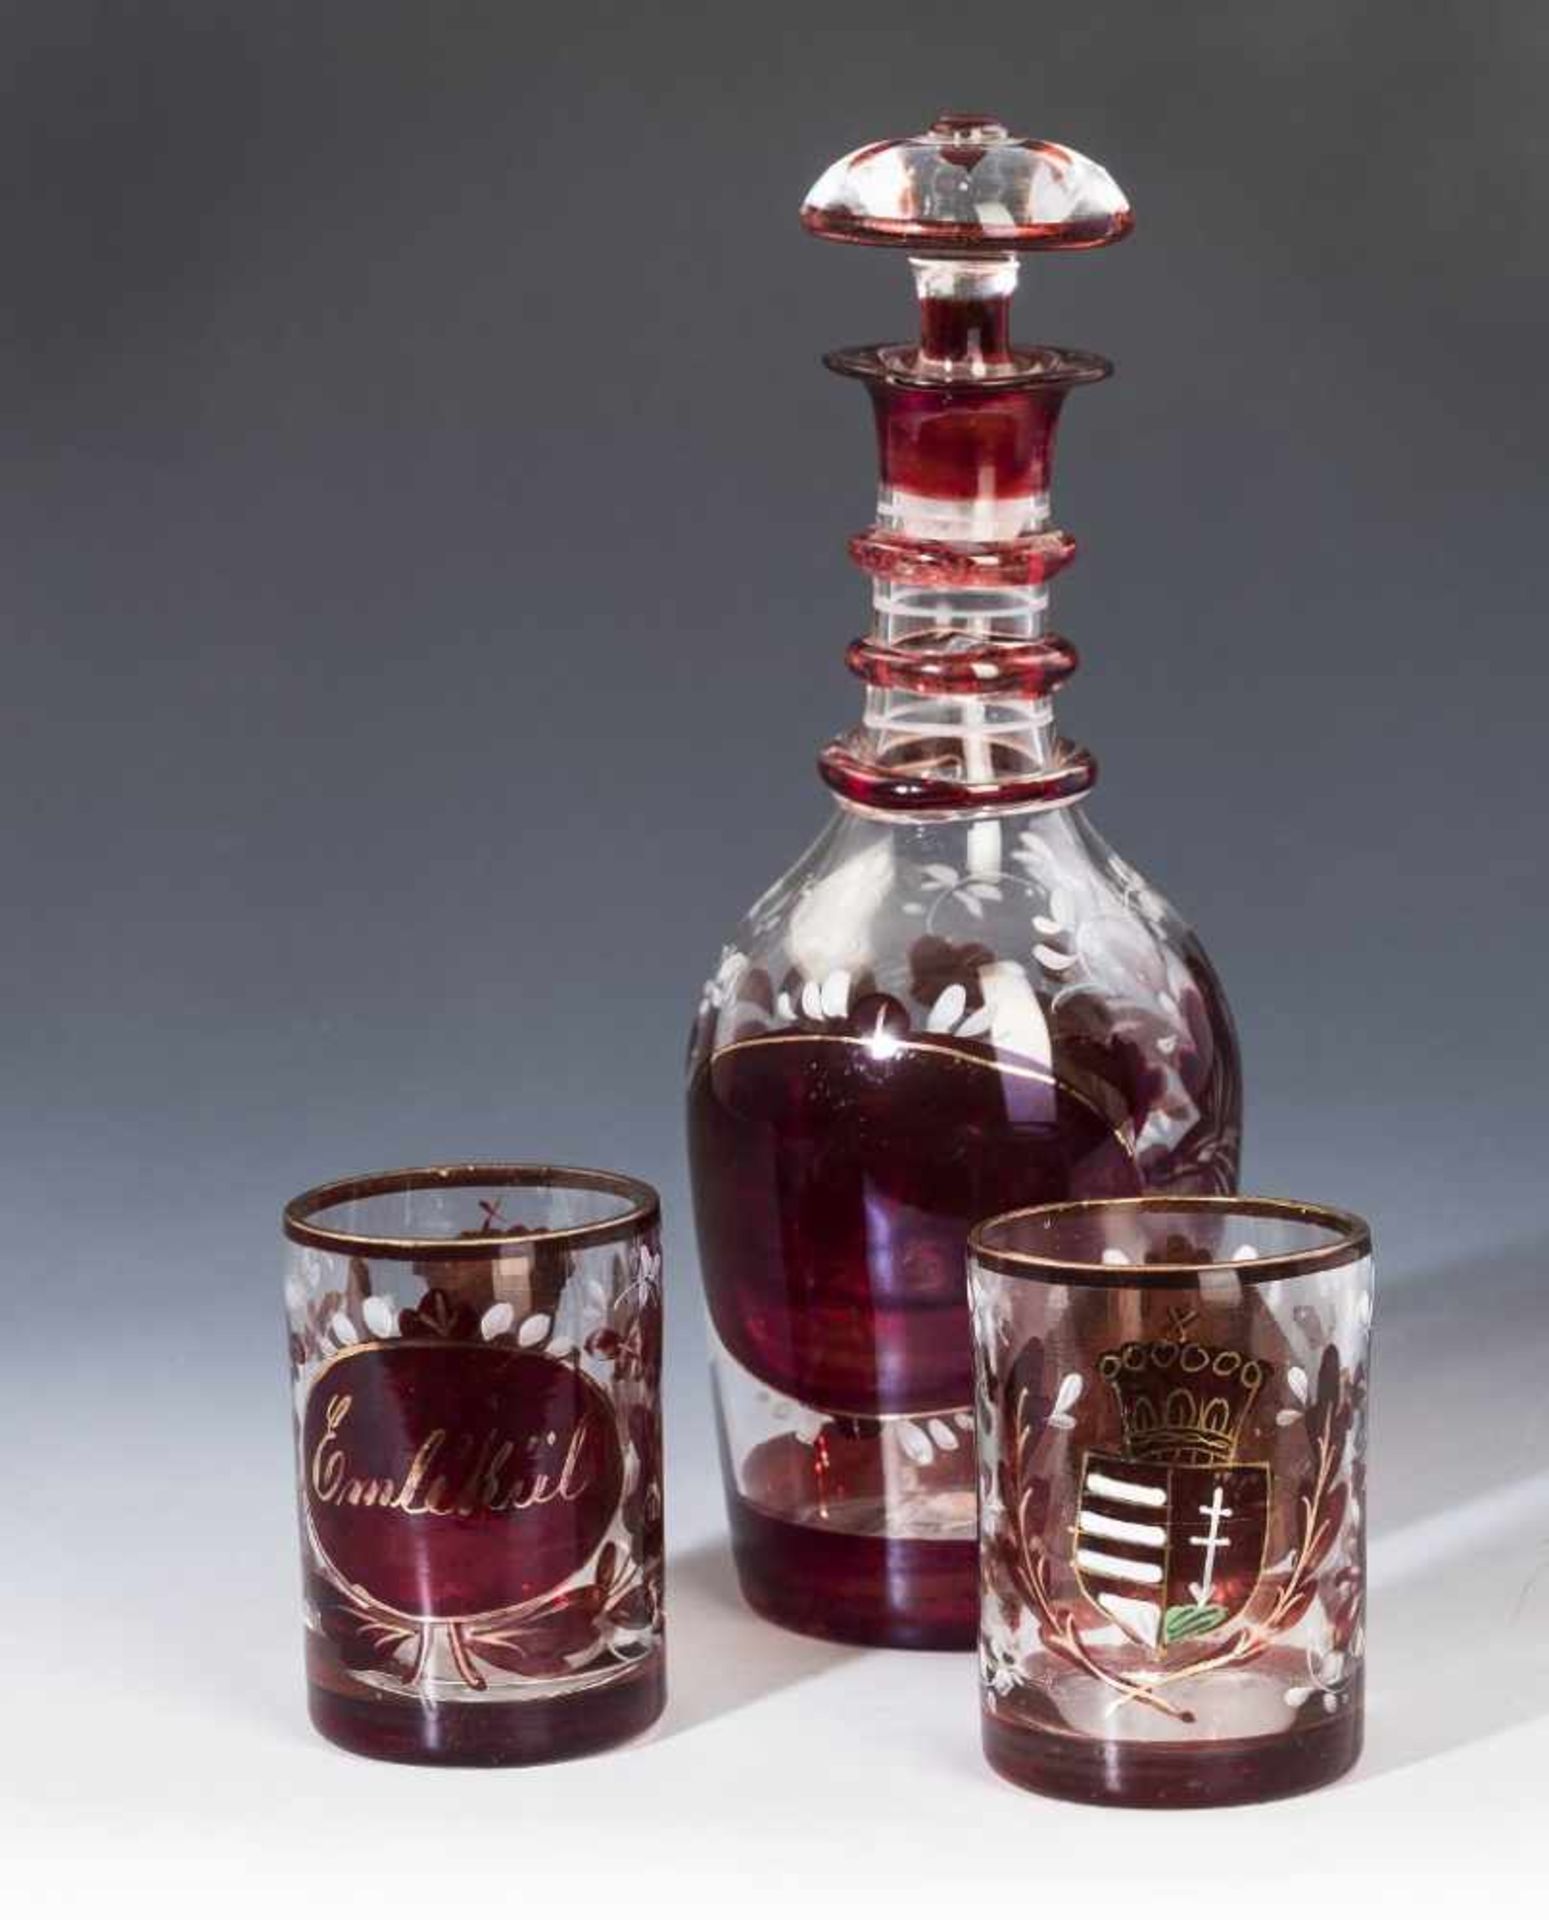 Karaffe mit zwei Gläsern. Rubiniert, mit ungarischem Wappen. "Emlé Kül". 2. H. 19. Jh.- - -27.00 %